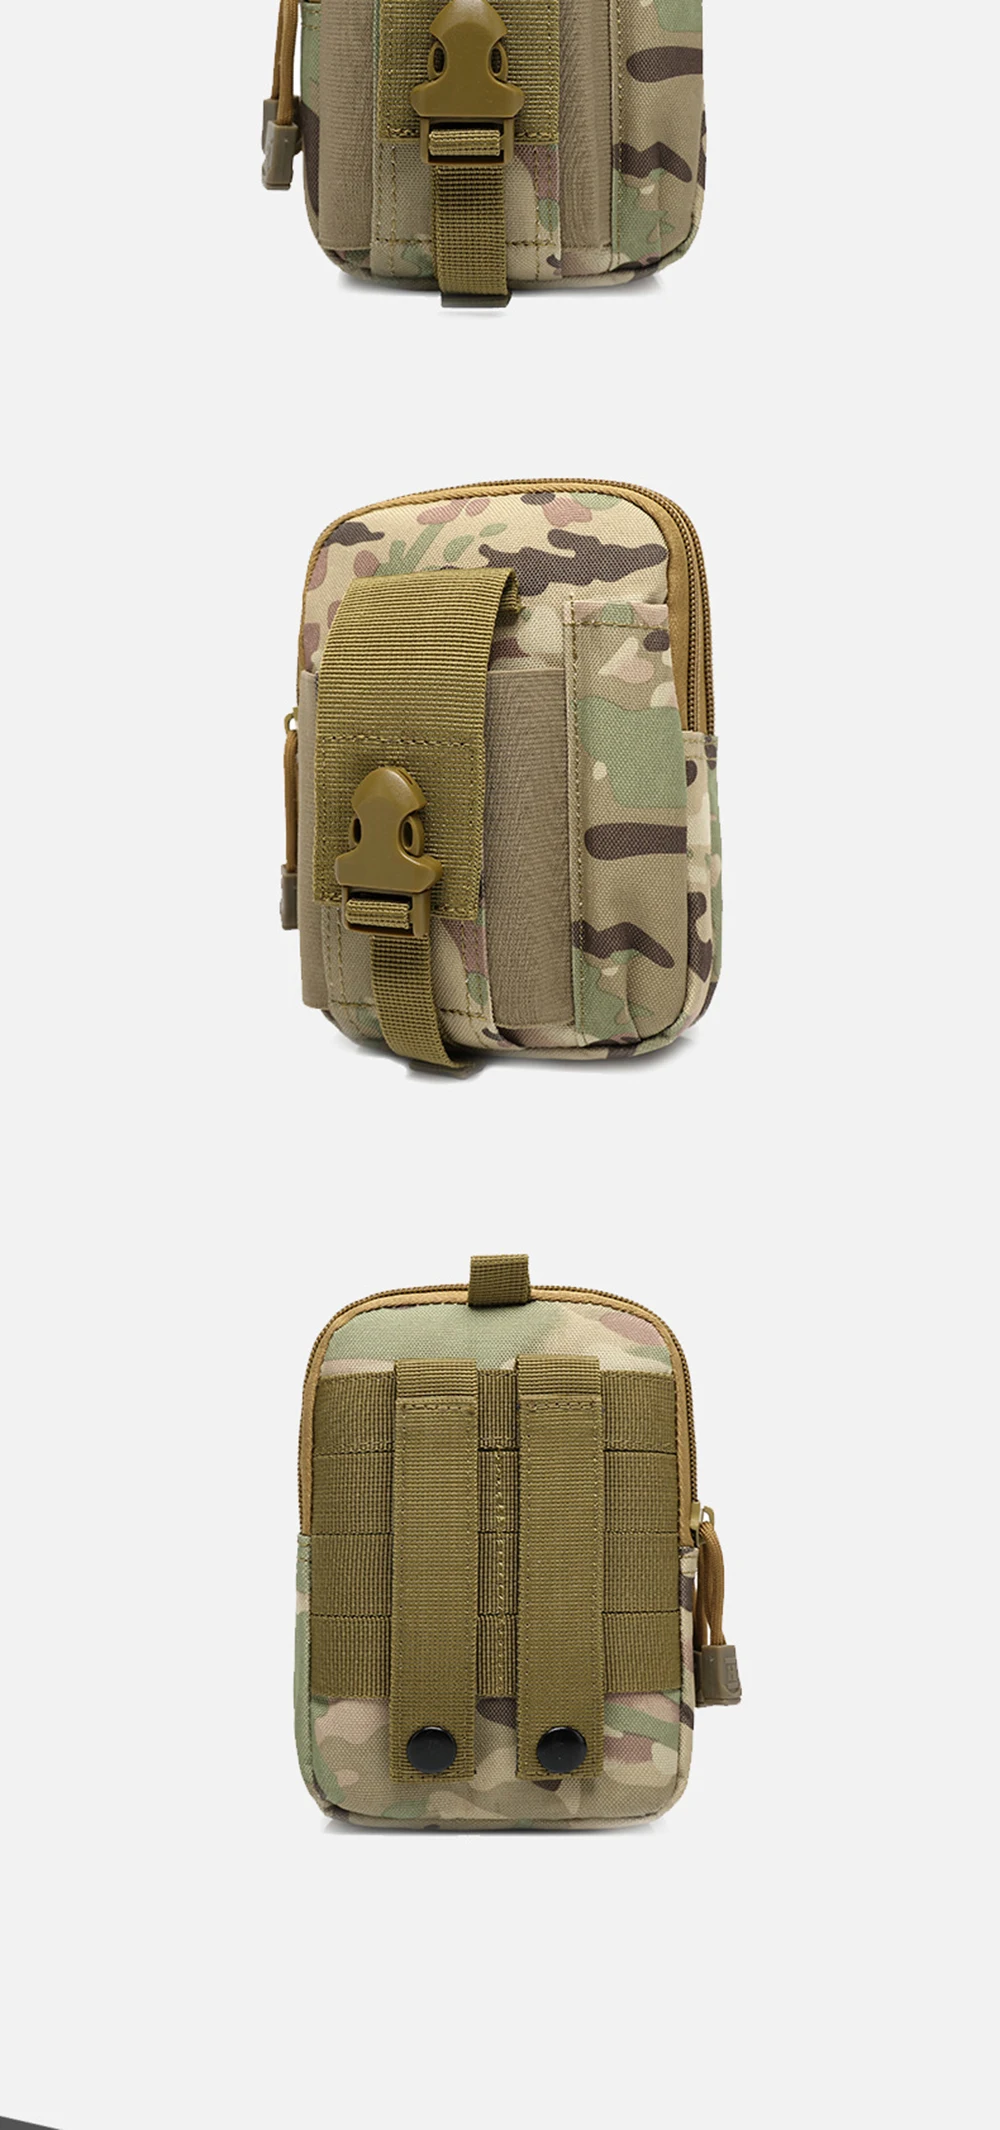 Bisi goro Водонепроницаемая износостойкая многофункциональная сумка для телефона модная камуфляжная сумка marsupio militare унисекс спортивный пояс